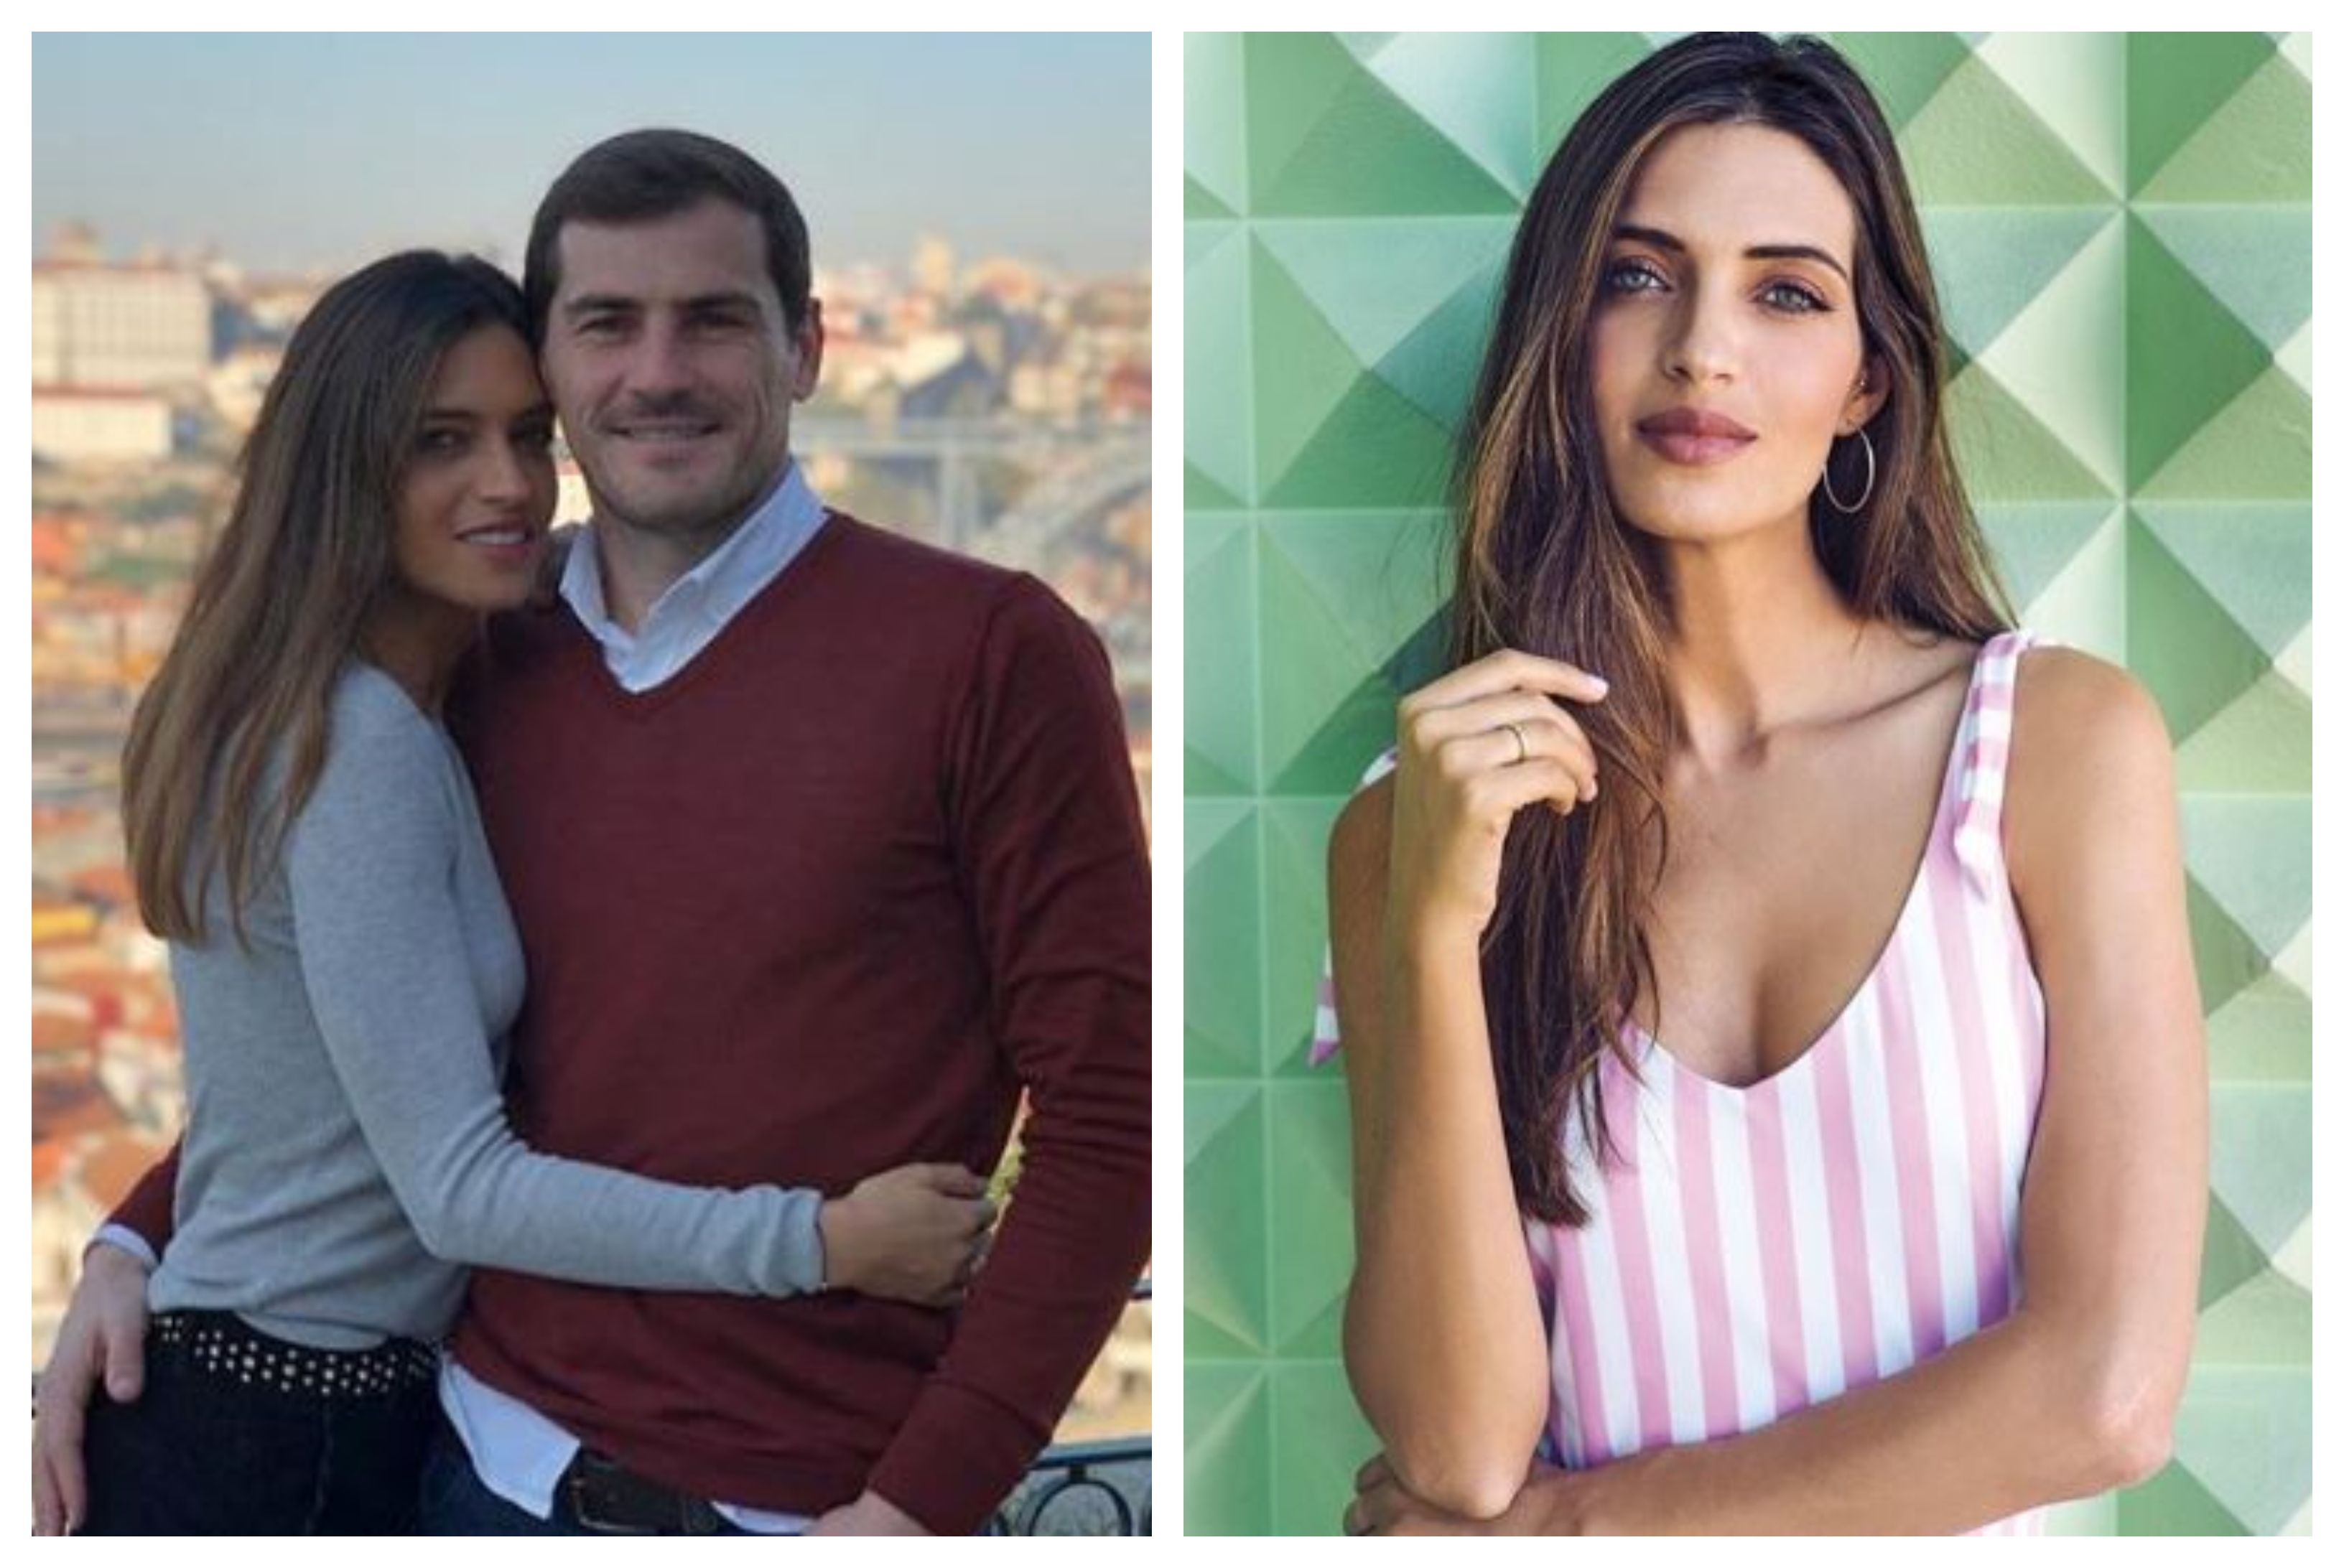 Sara Carbonero e Iker Casillas superaron varias pruebas juntos. (Foto Prensa Libre: Instagram @saracarbonero)